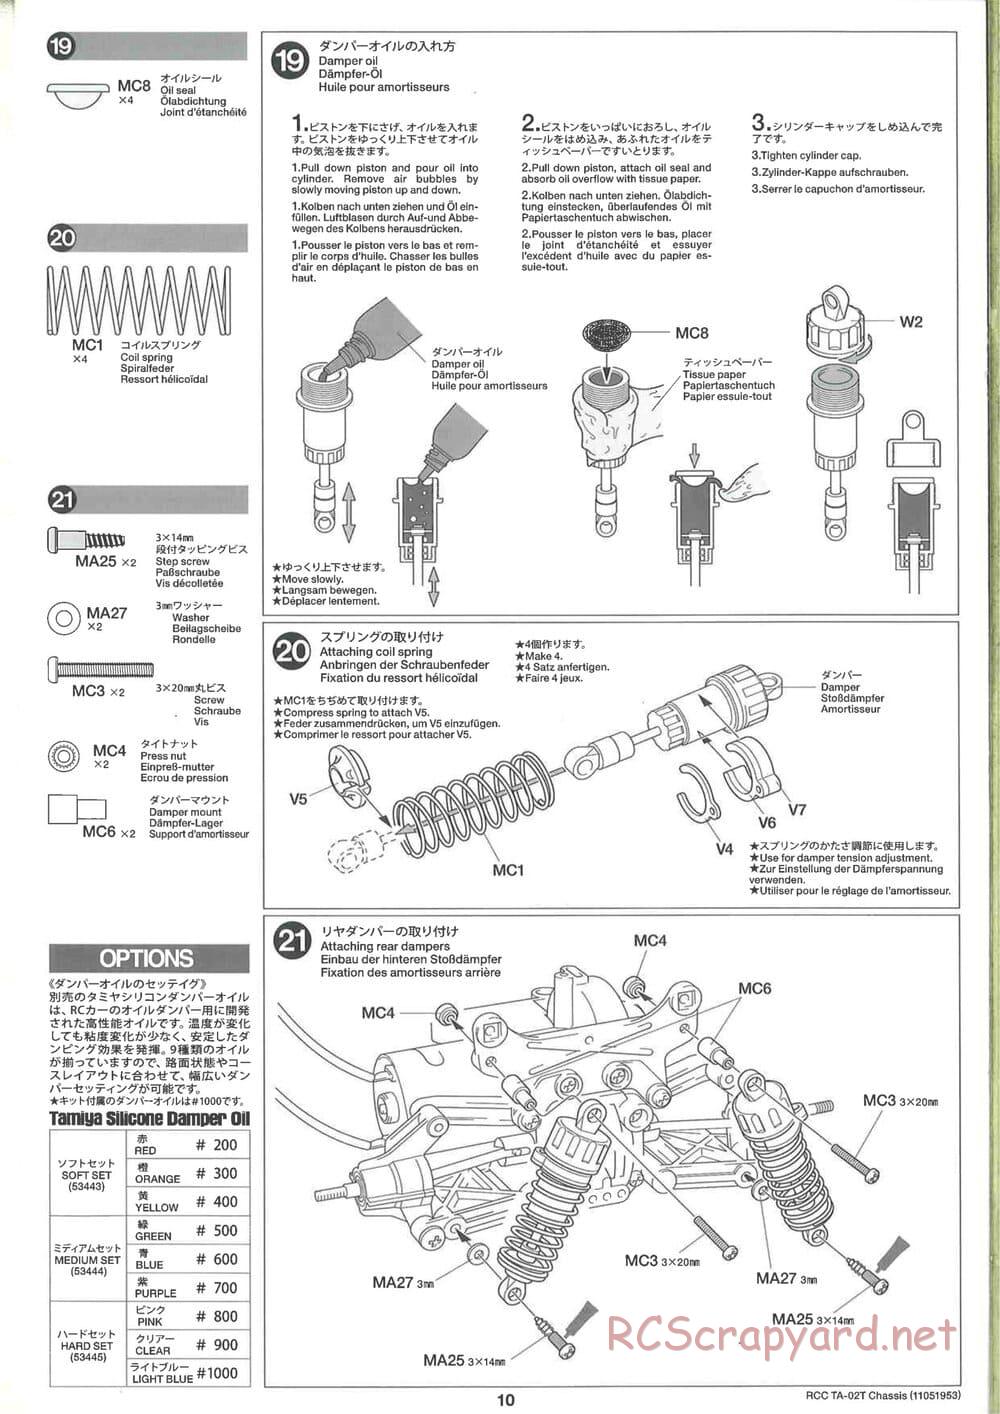 Tamiya - TA-02T Chassis - Manual - Page 10